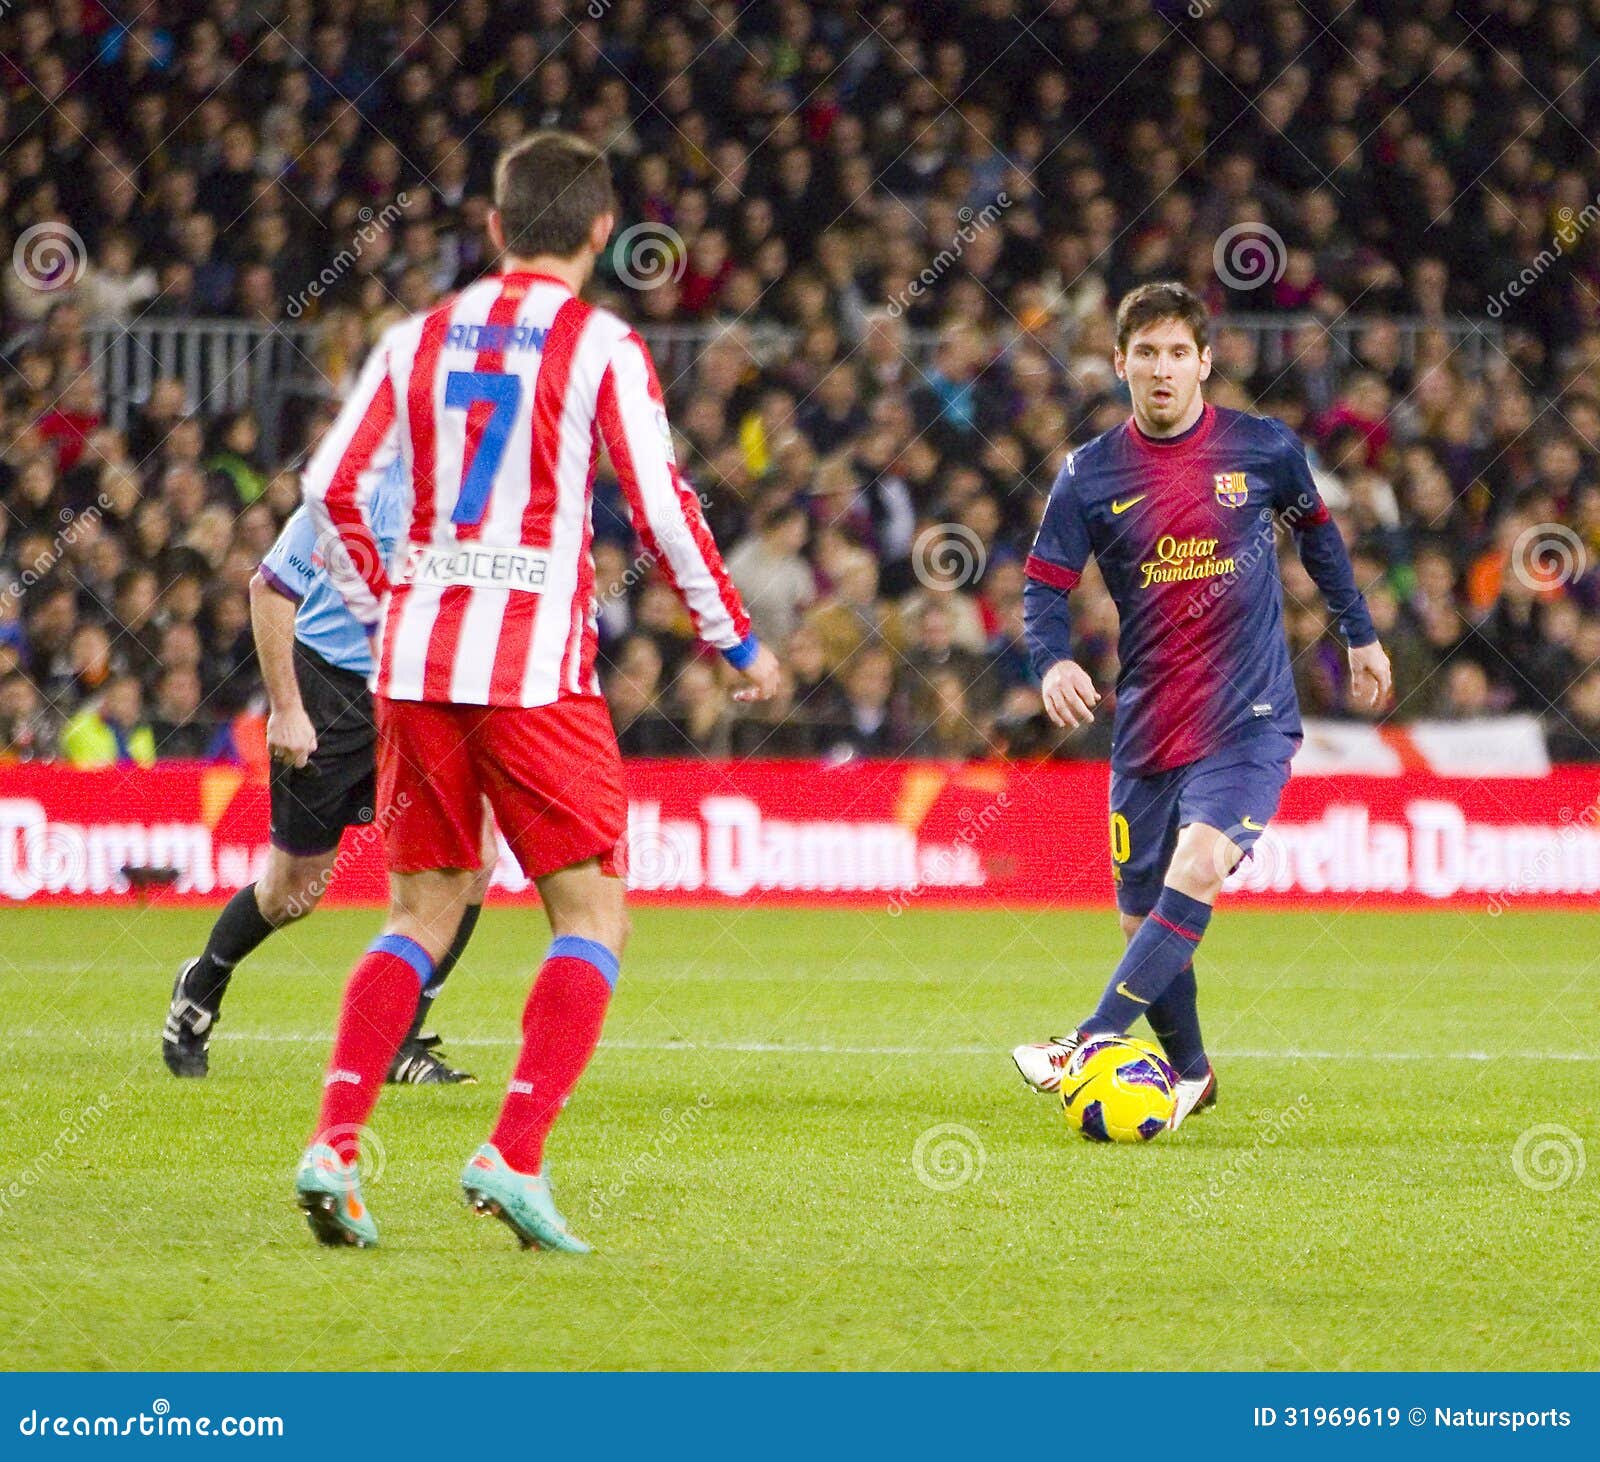 lionel-messi-action-spanish-league-match-fc-barcelona-atletico-de-madrid-final-score-december-camp-nou-31969619.jpg